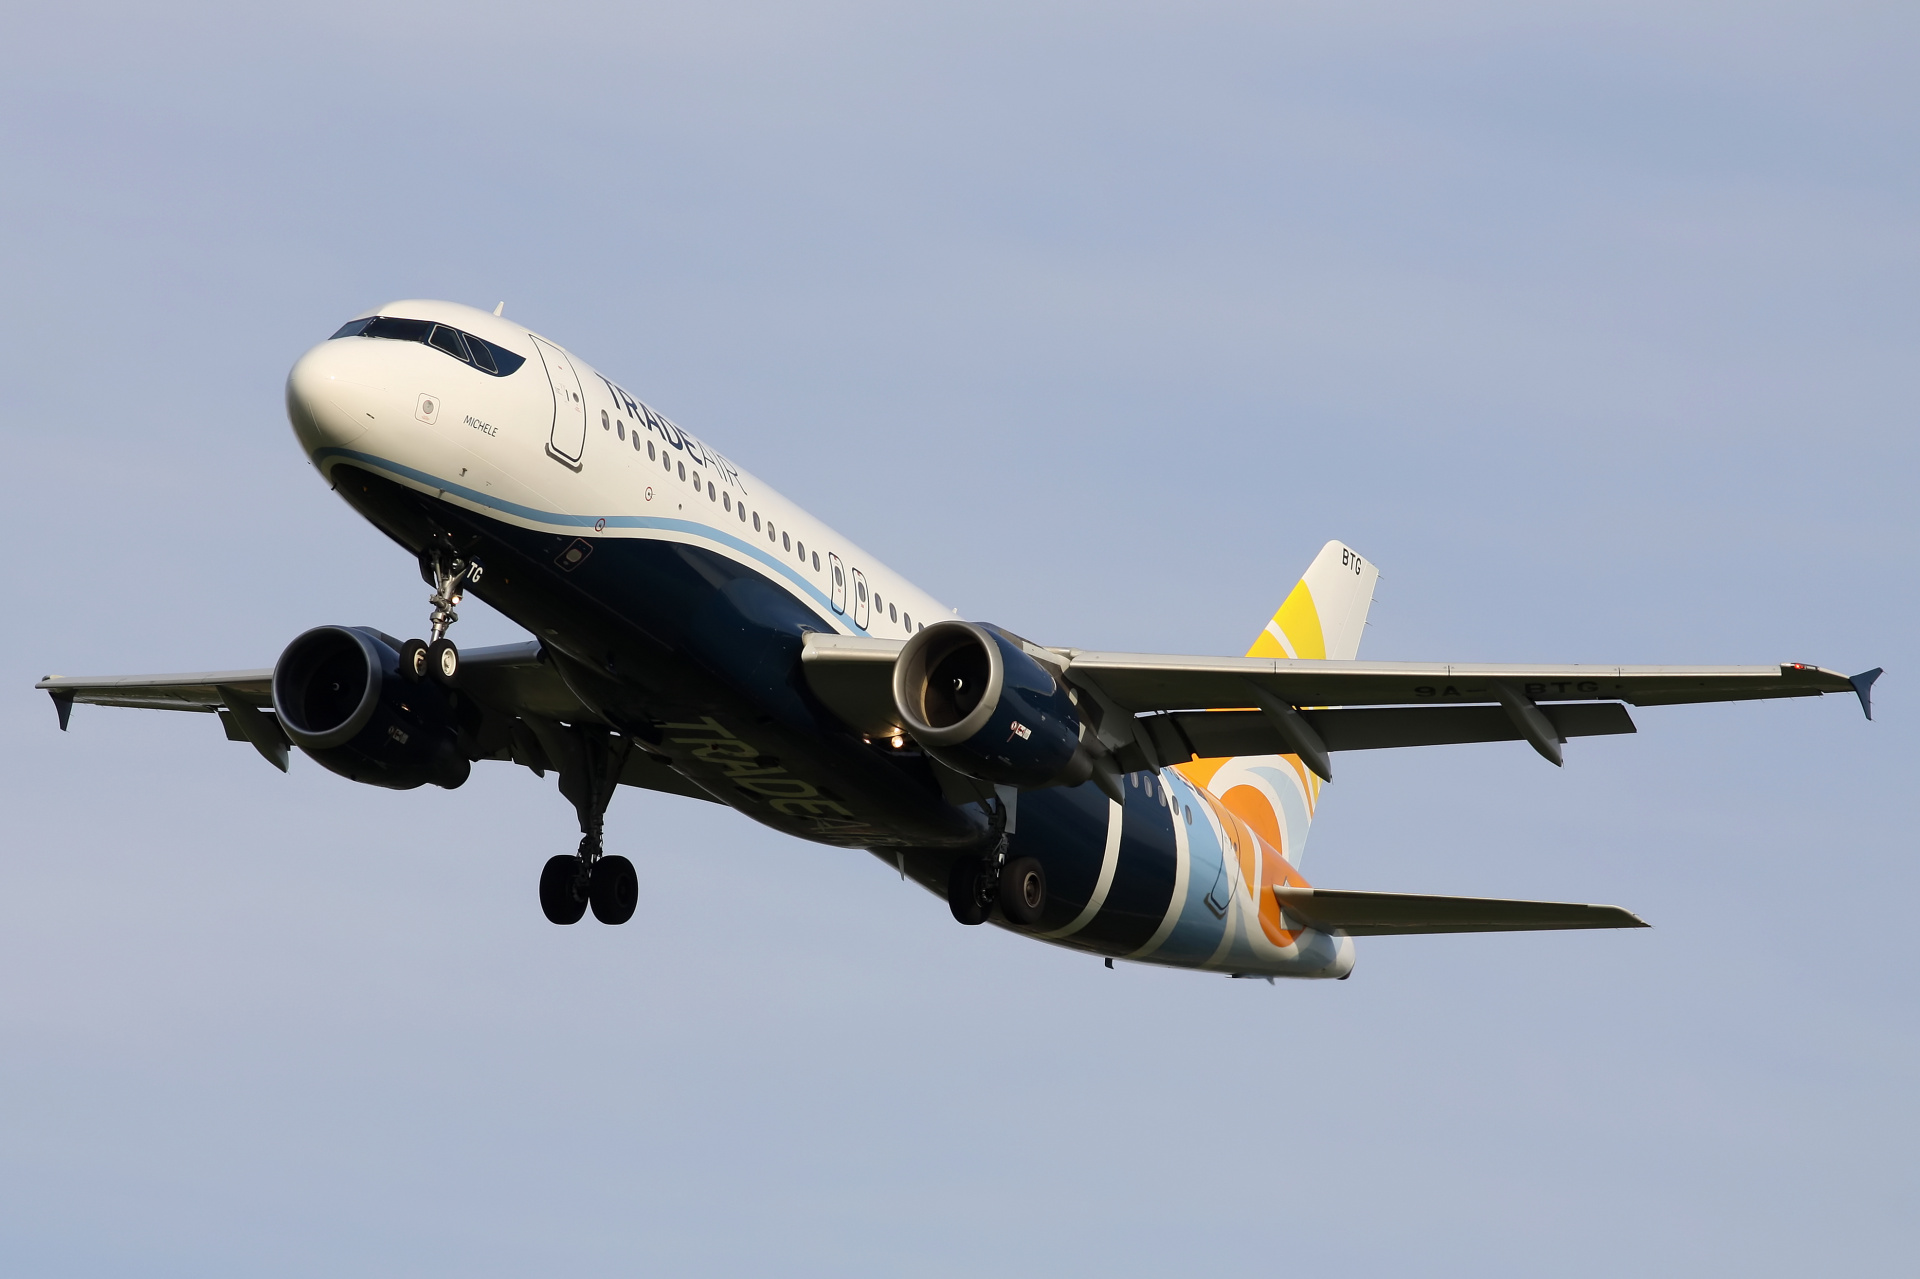 9A-BTG, Trade Air (Samoloty » Spotting na EPWA » Airbus A320-200)